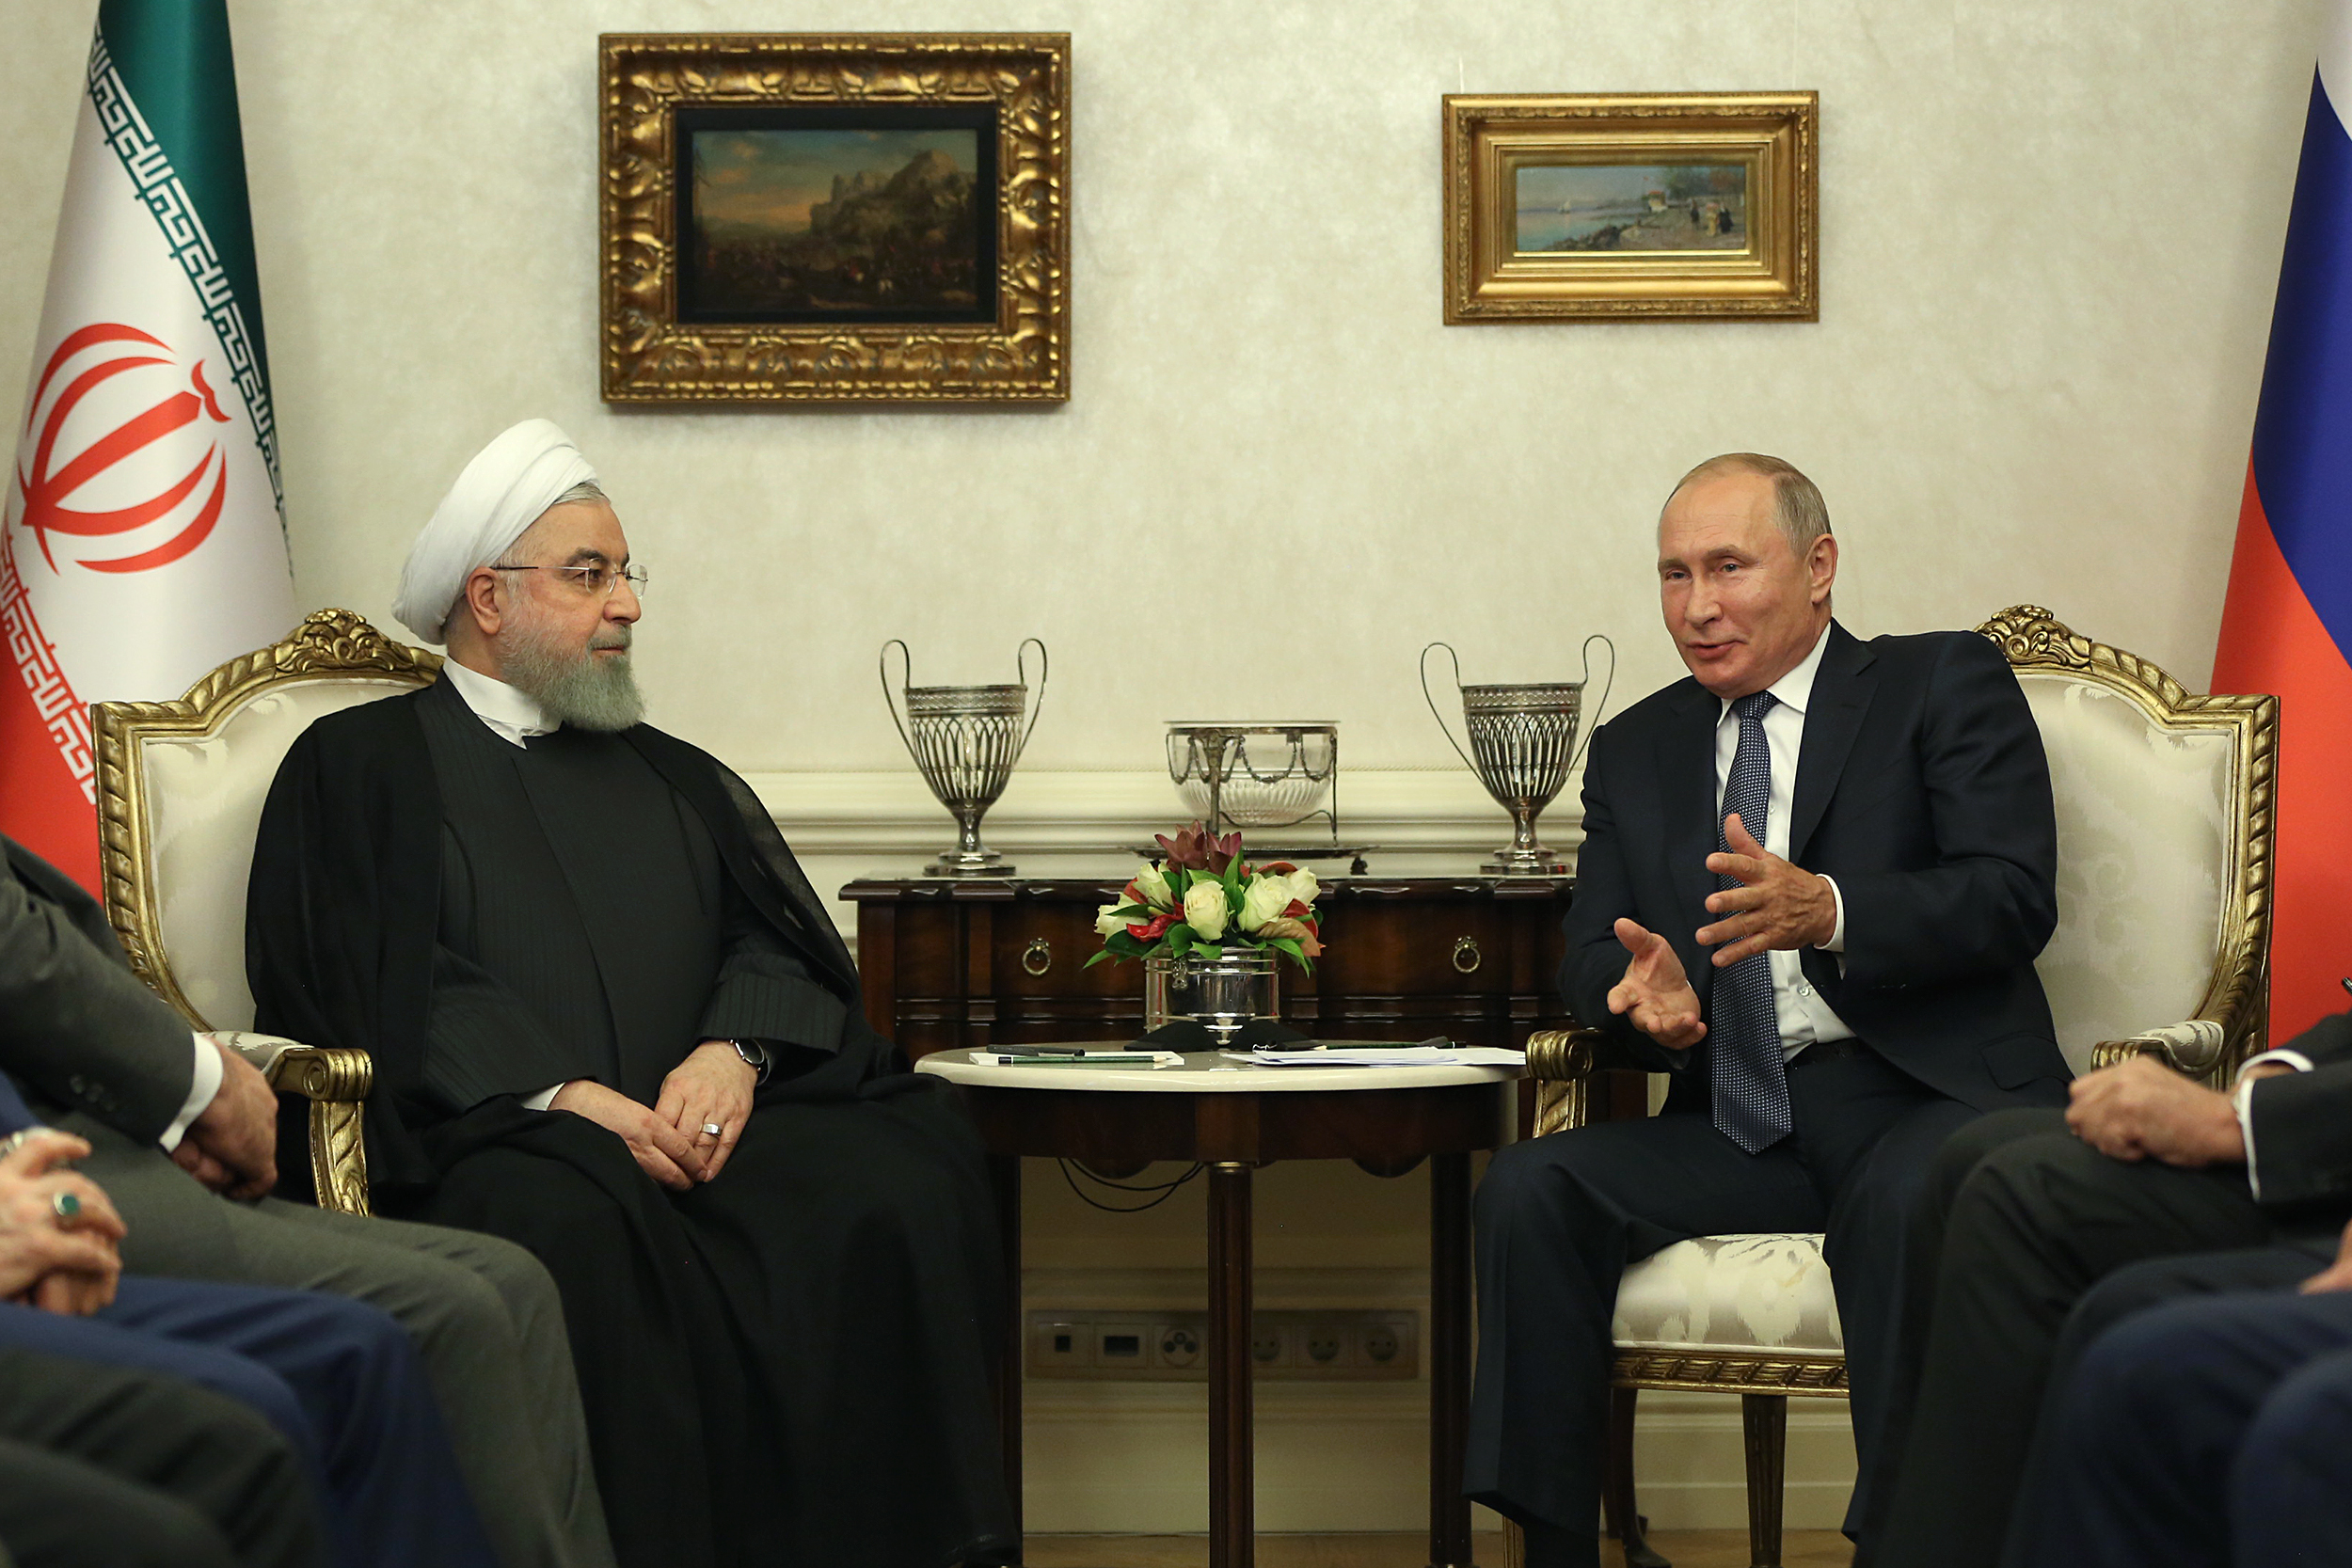 تعامل دوستانه مسئولان ایران و روسیه در تامین منافع دو ملت و منطقه است/ اقدامات ایران در کاهش تعهدات برجامی گامی در راستای حفظ برجام و تعهد کامل طرفین آن است